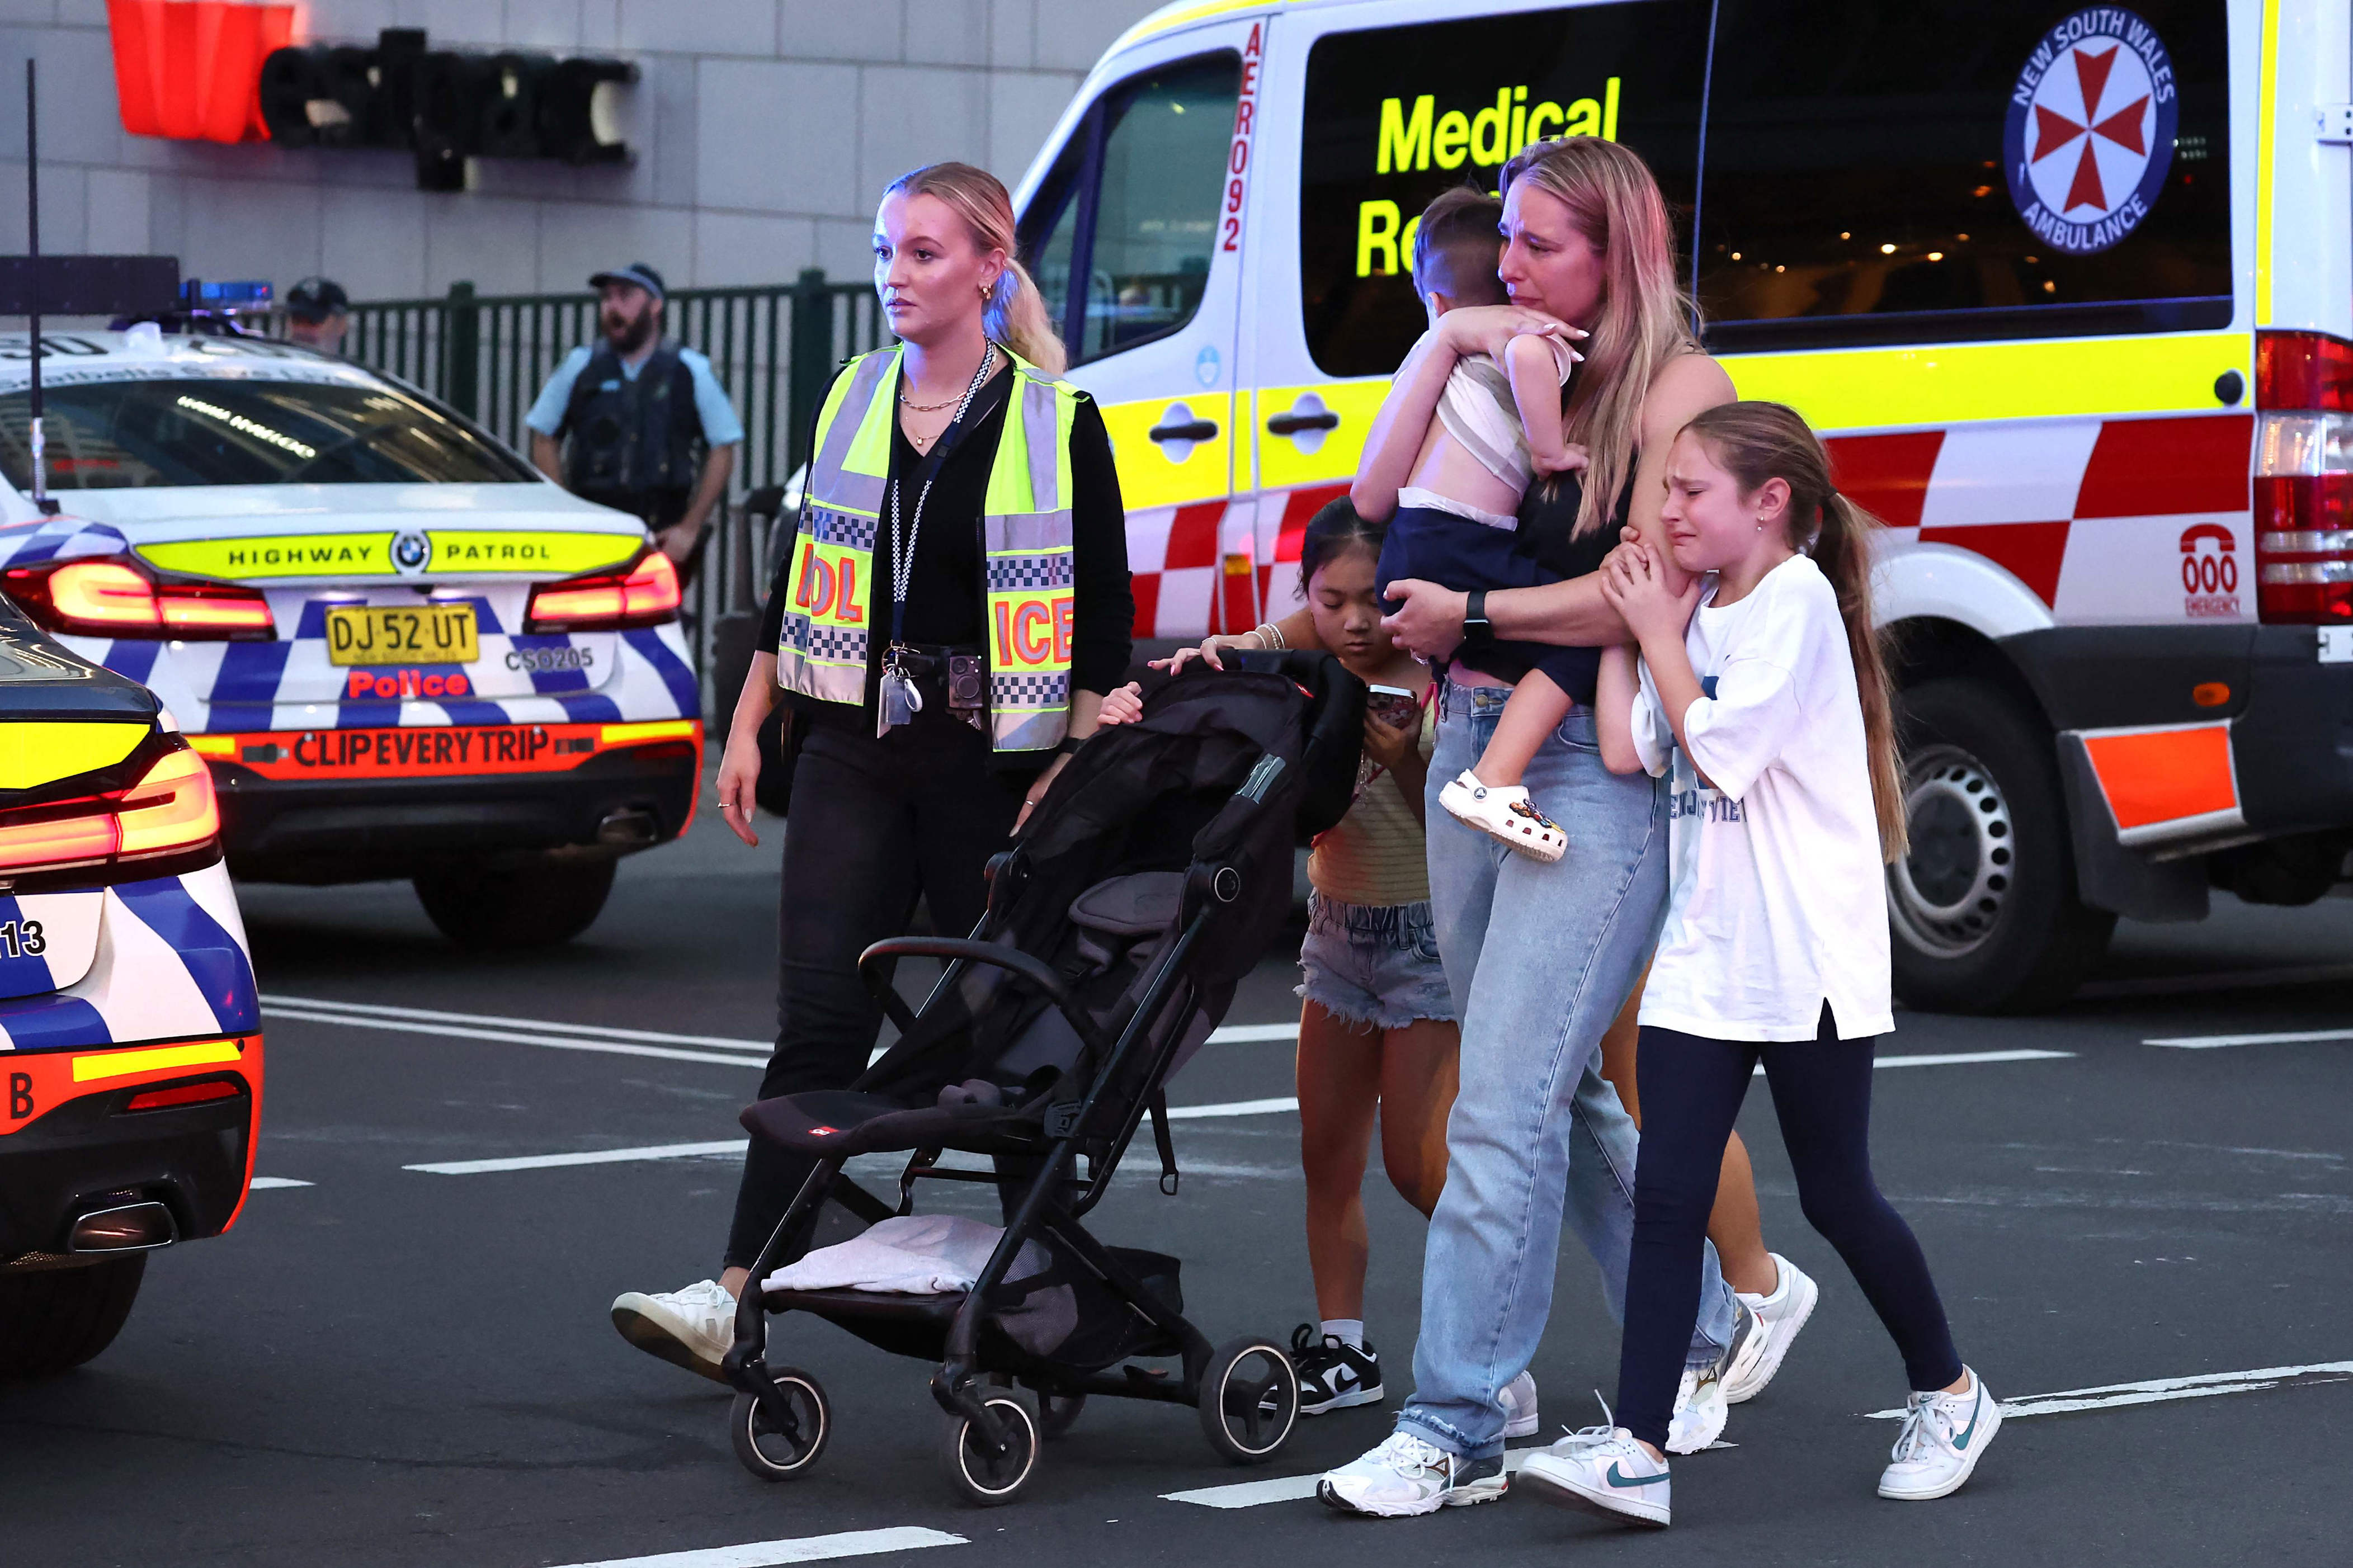 siete muertos, incluido el atacante, en un apuñalamiento múltiple en sydney